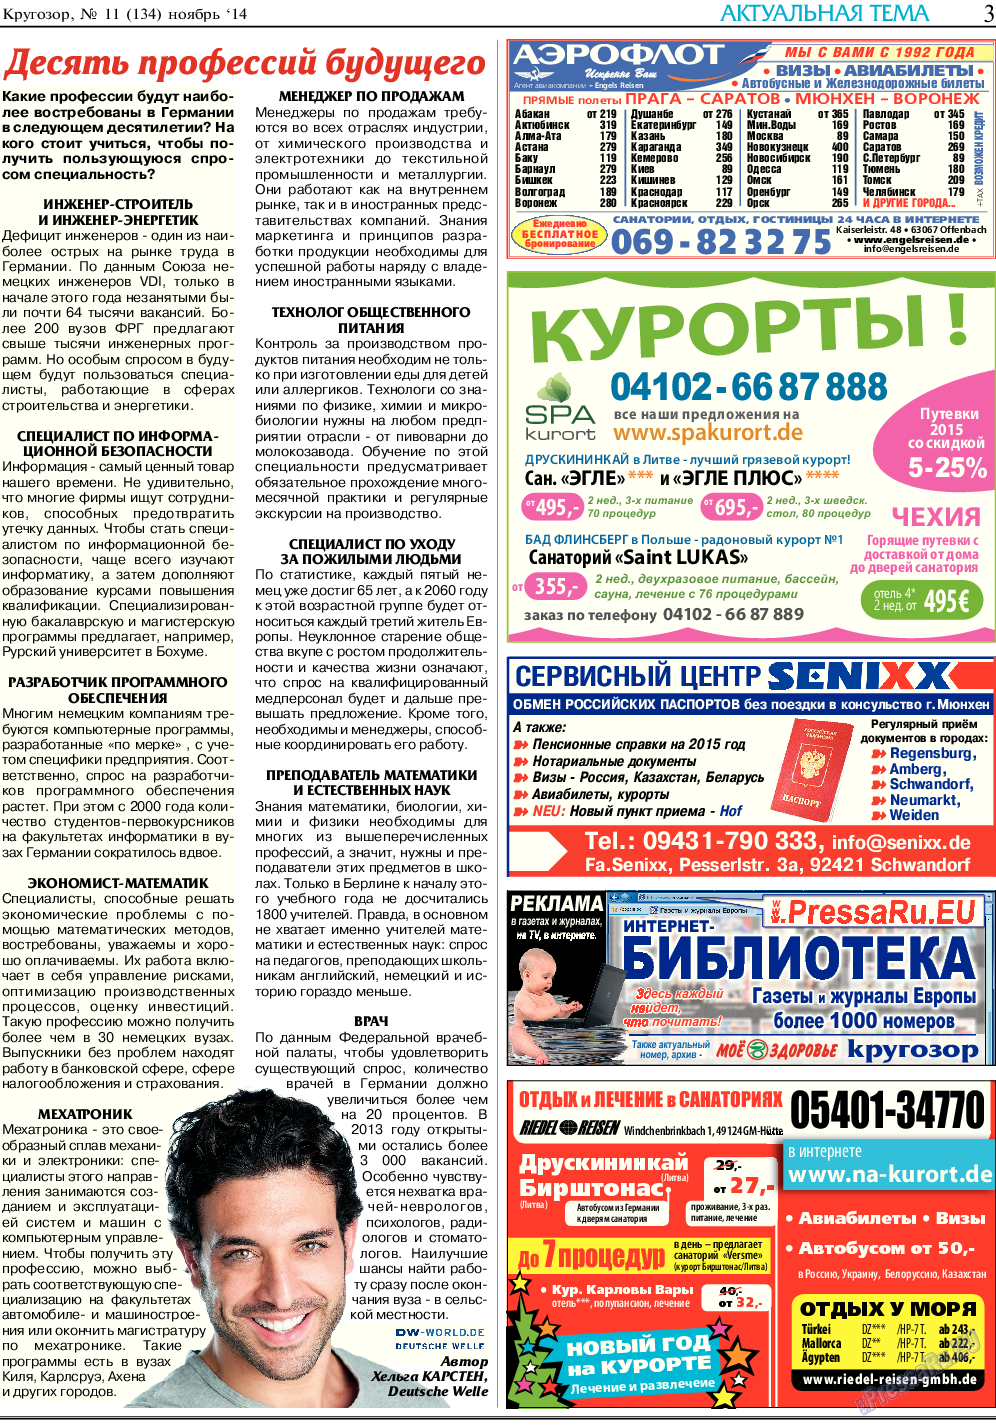 Кругозор, газета. 2014 №11 стр.3